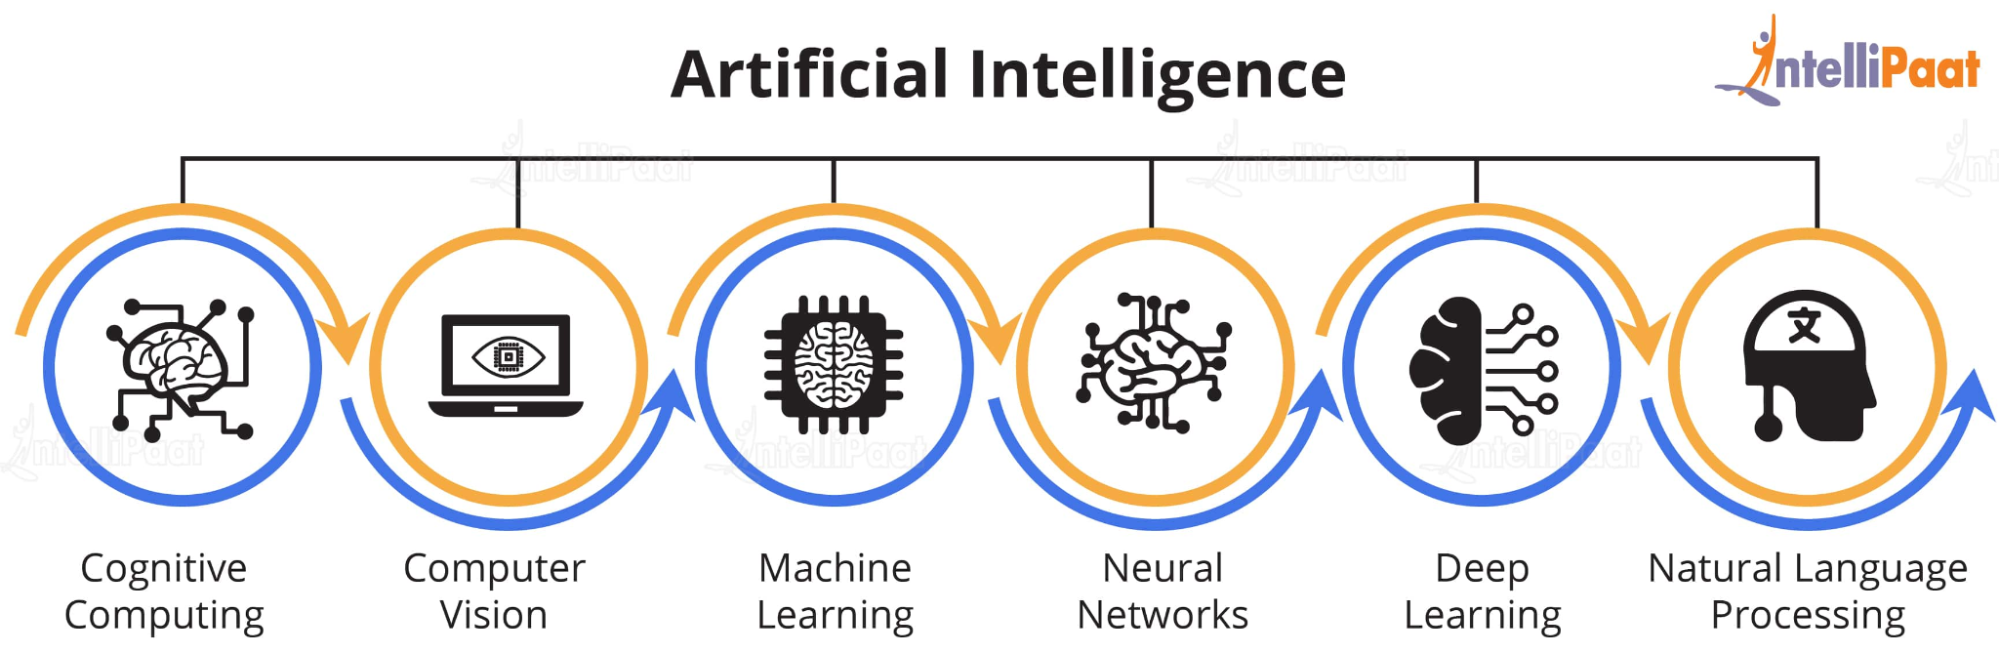 Нейросеть imagine. Машинное обучение. Машинное обучение (Machine Learning). Машинное обучение и искусственный интеллект. How Artificial Intelligence works.